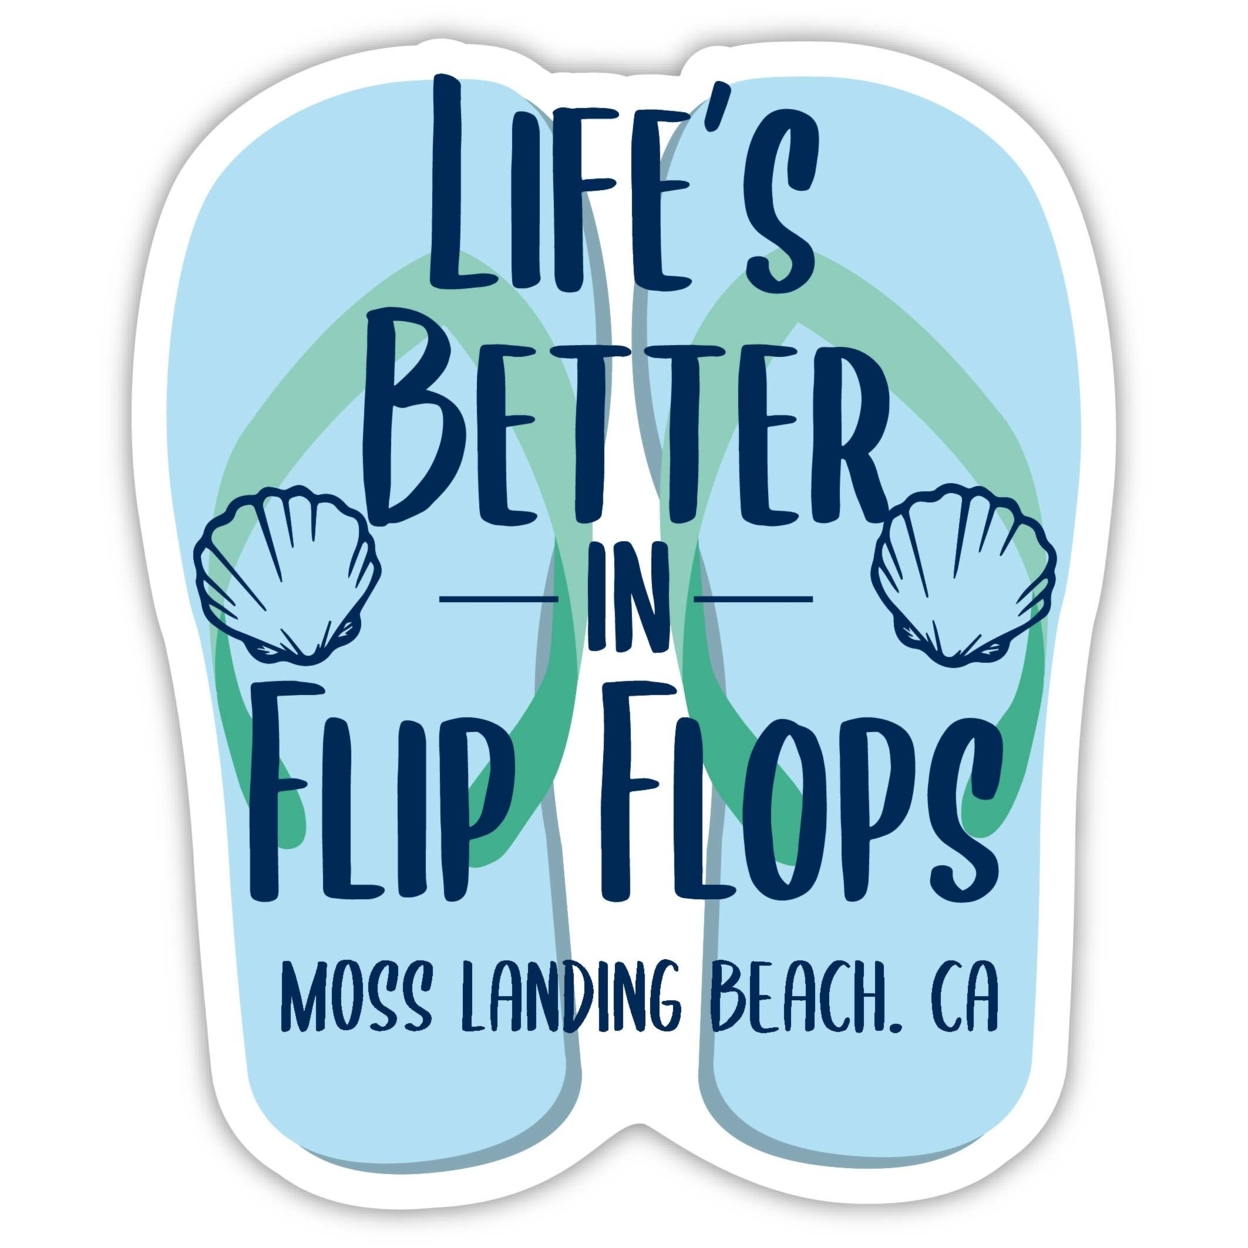 Moss Landing Beach California Souvenir 4 Inch Vinyl Decal Sticker Flip Flop Design